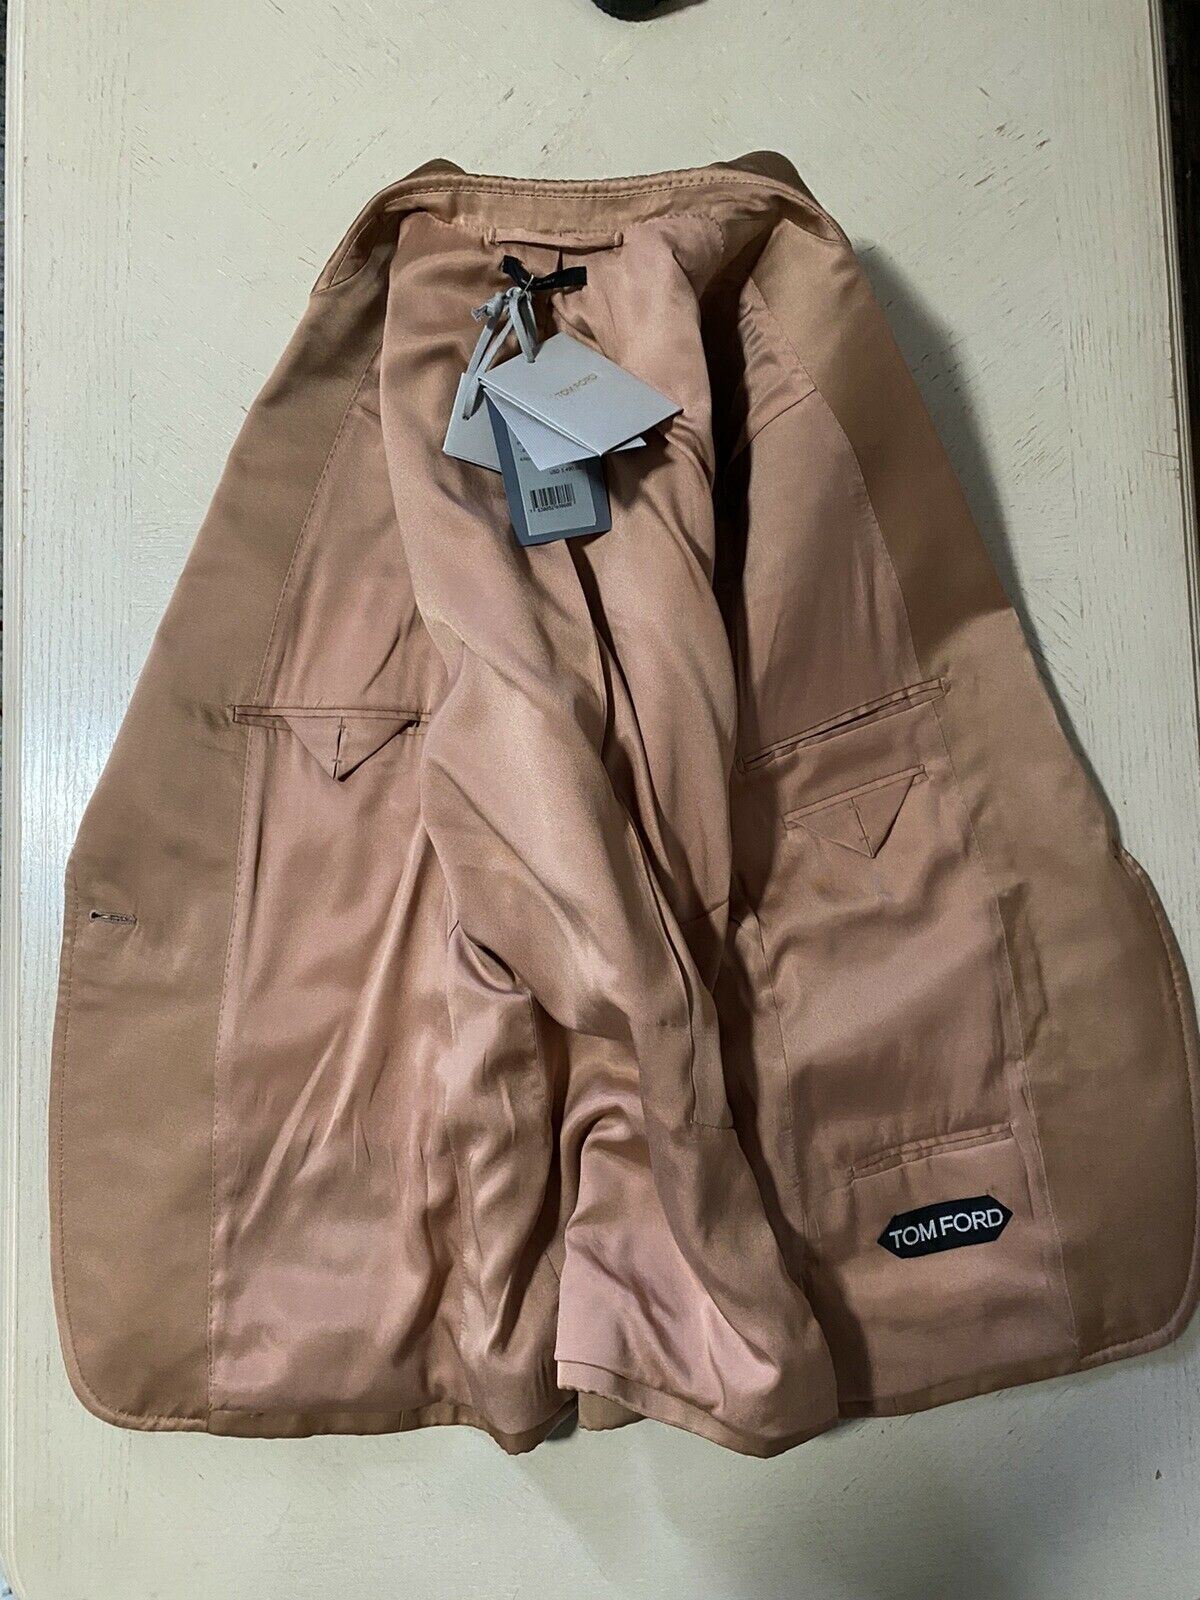 New $3490 TOM FORD Women’s Jacket Blazer Bisque/Beige 42/8 Italy